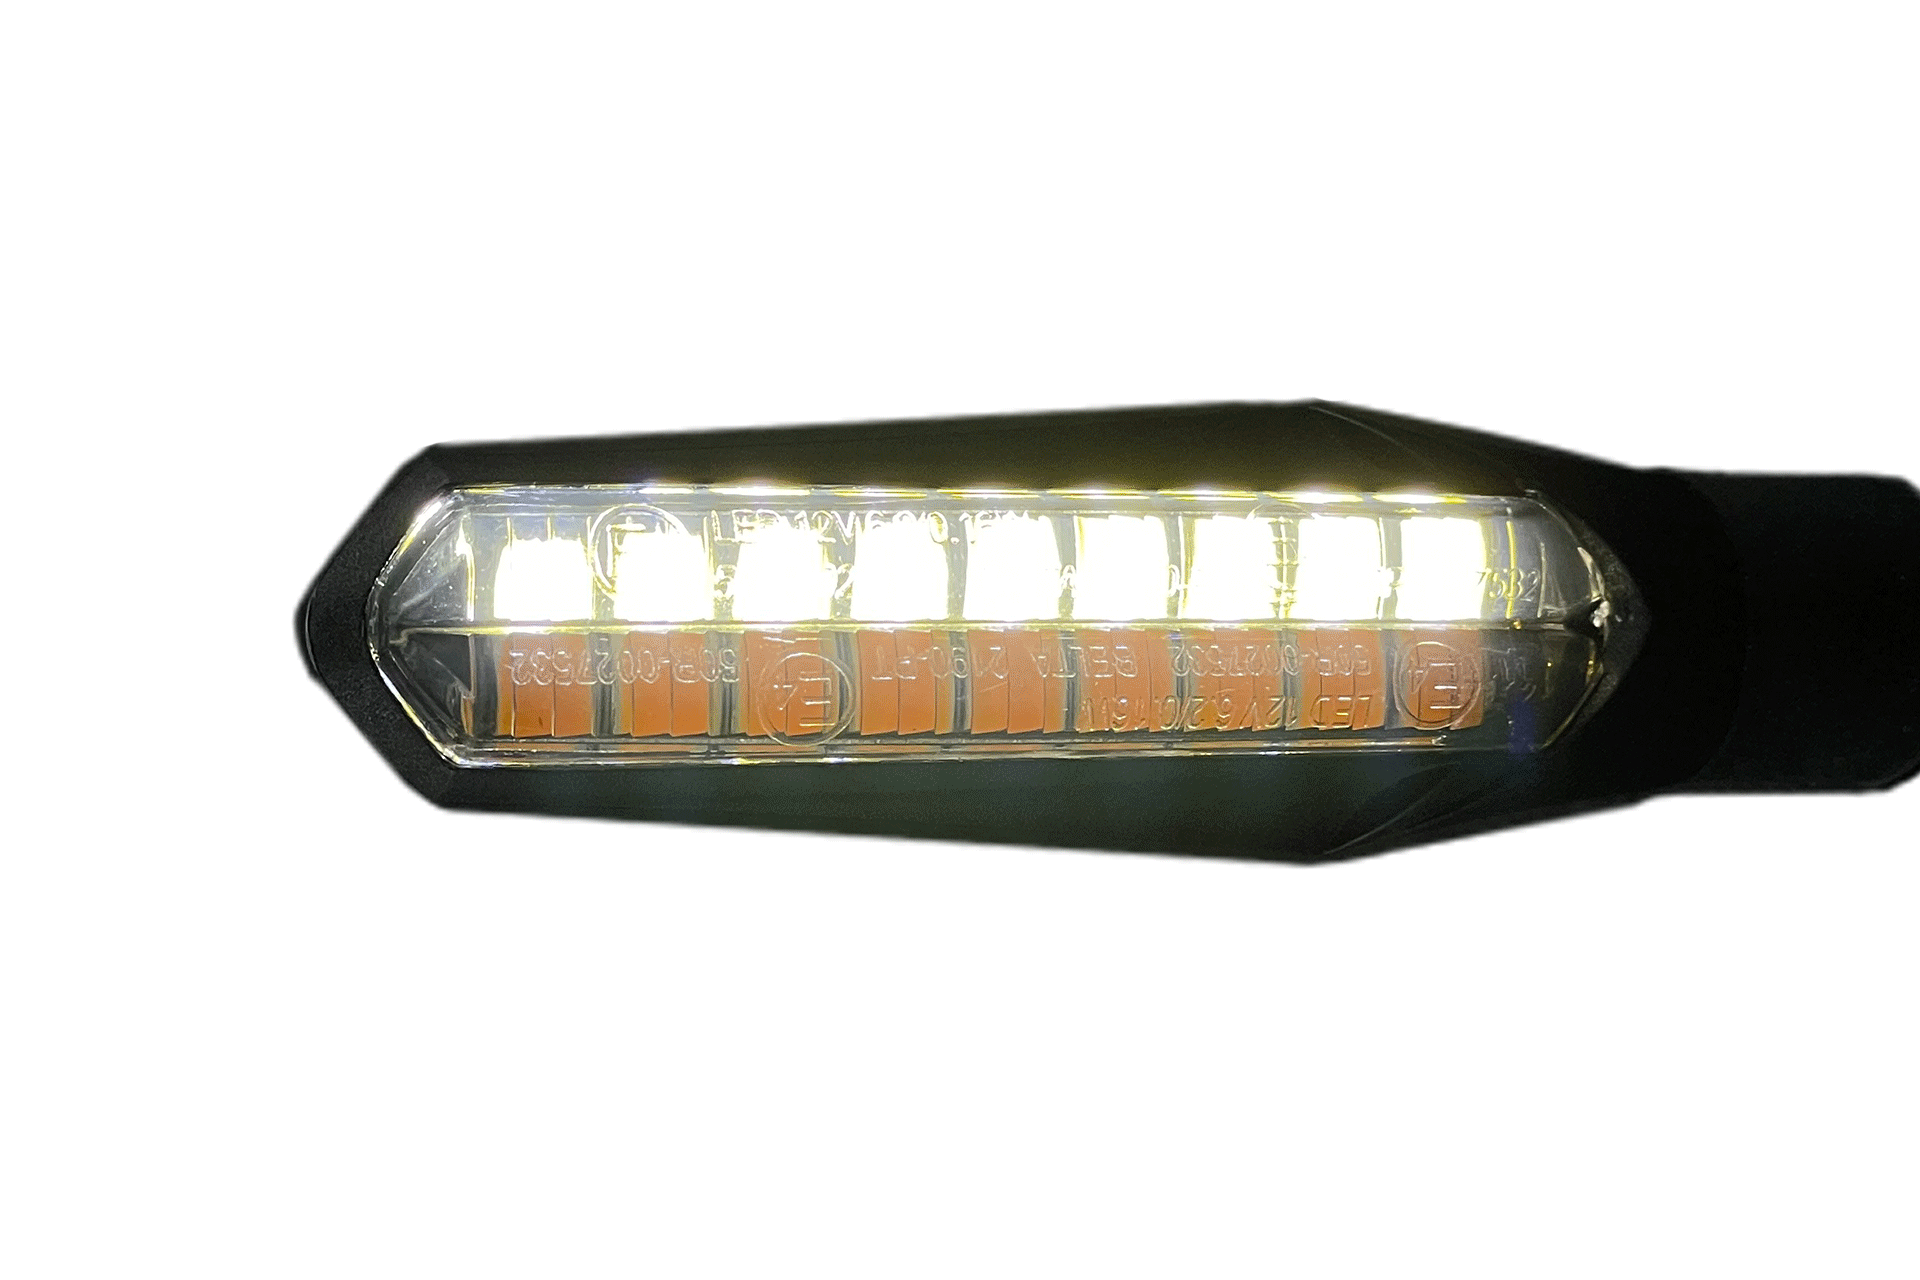 Sequentieller LED-Blinker Yamaha MT-09 mit Positions- und Bremslicht - 4-teiliges Kit